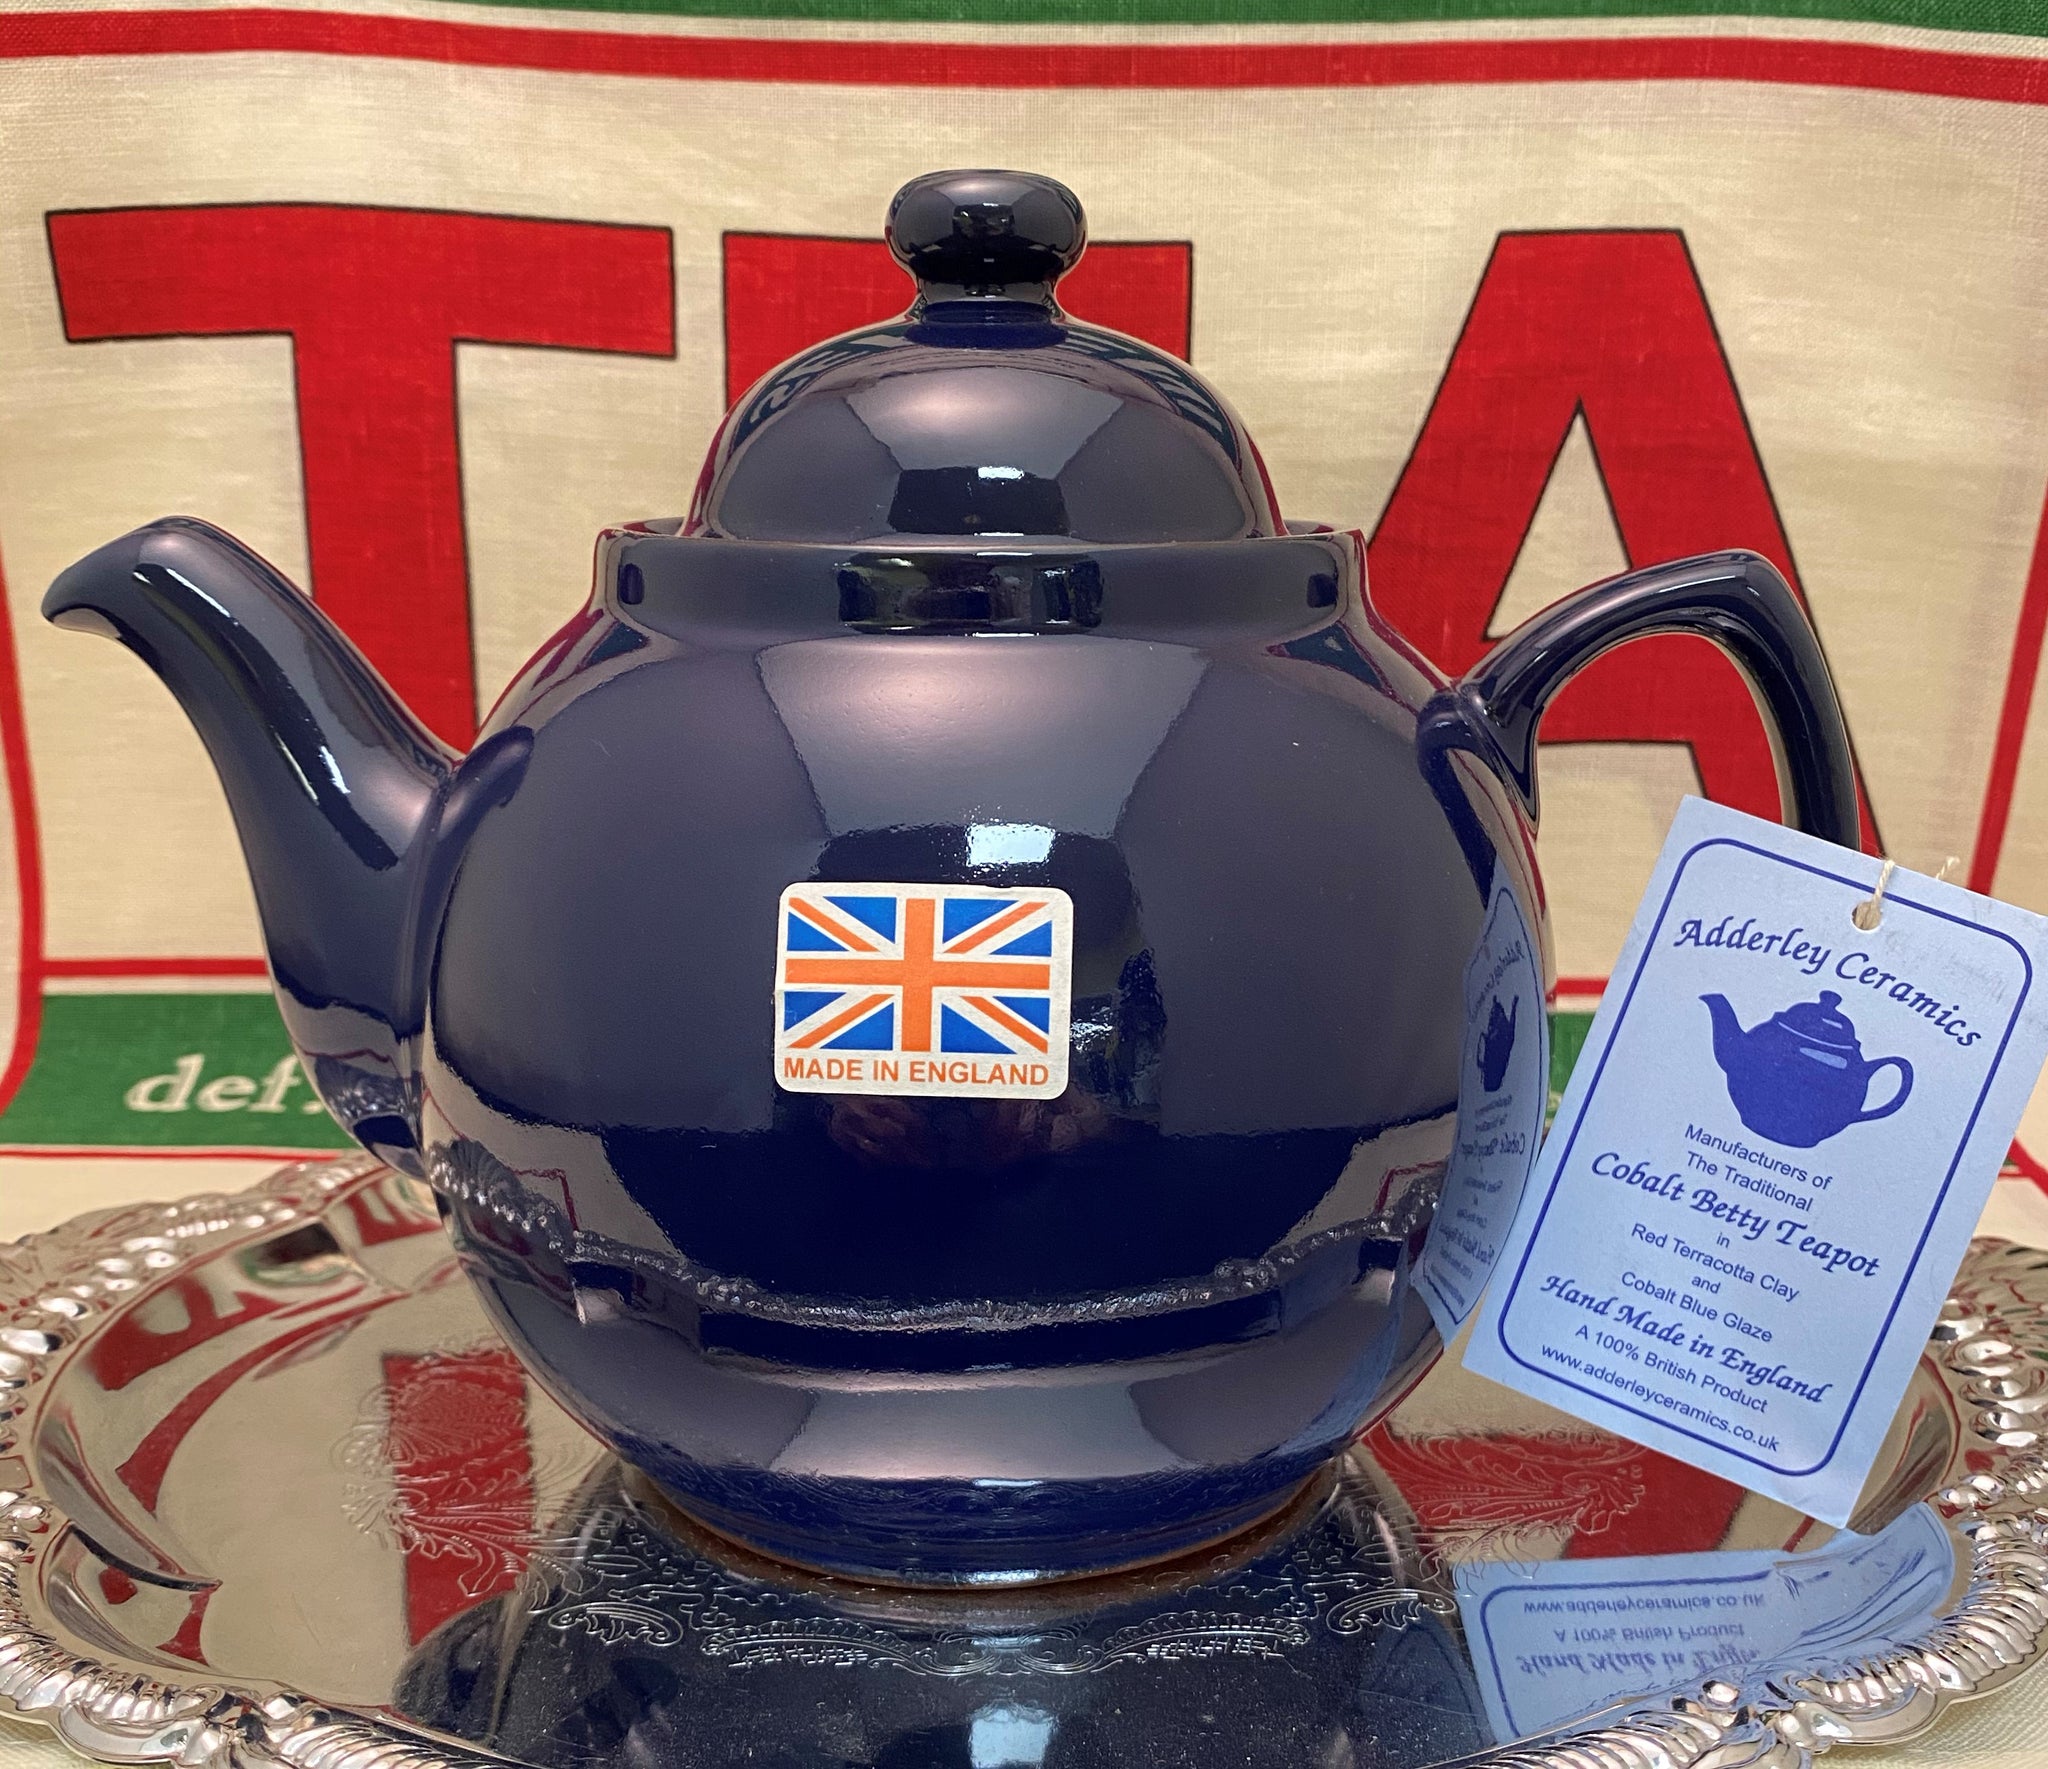 Cobalt Blue Betty Teapot